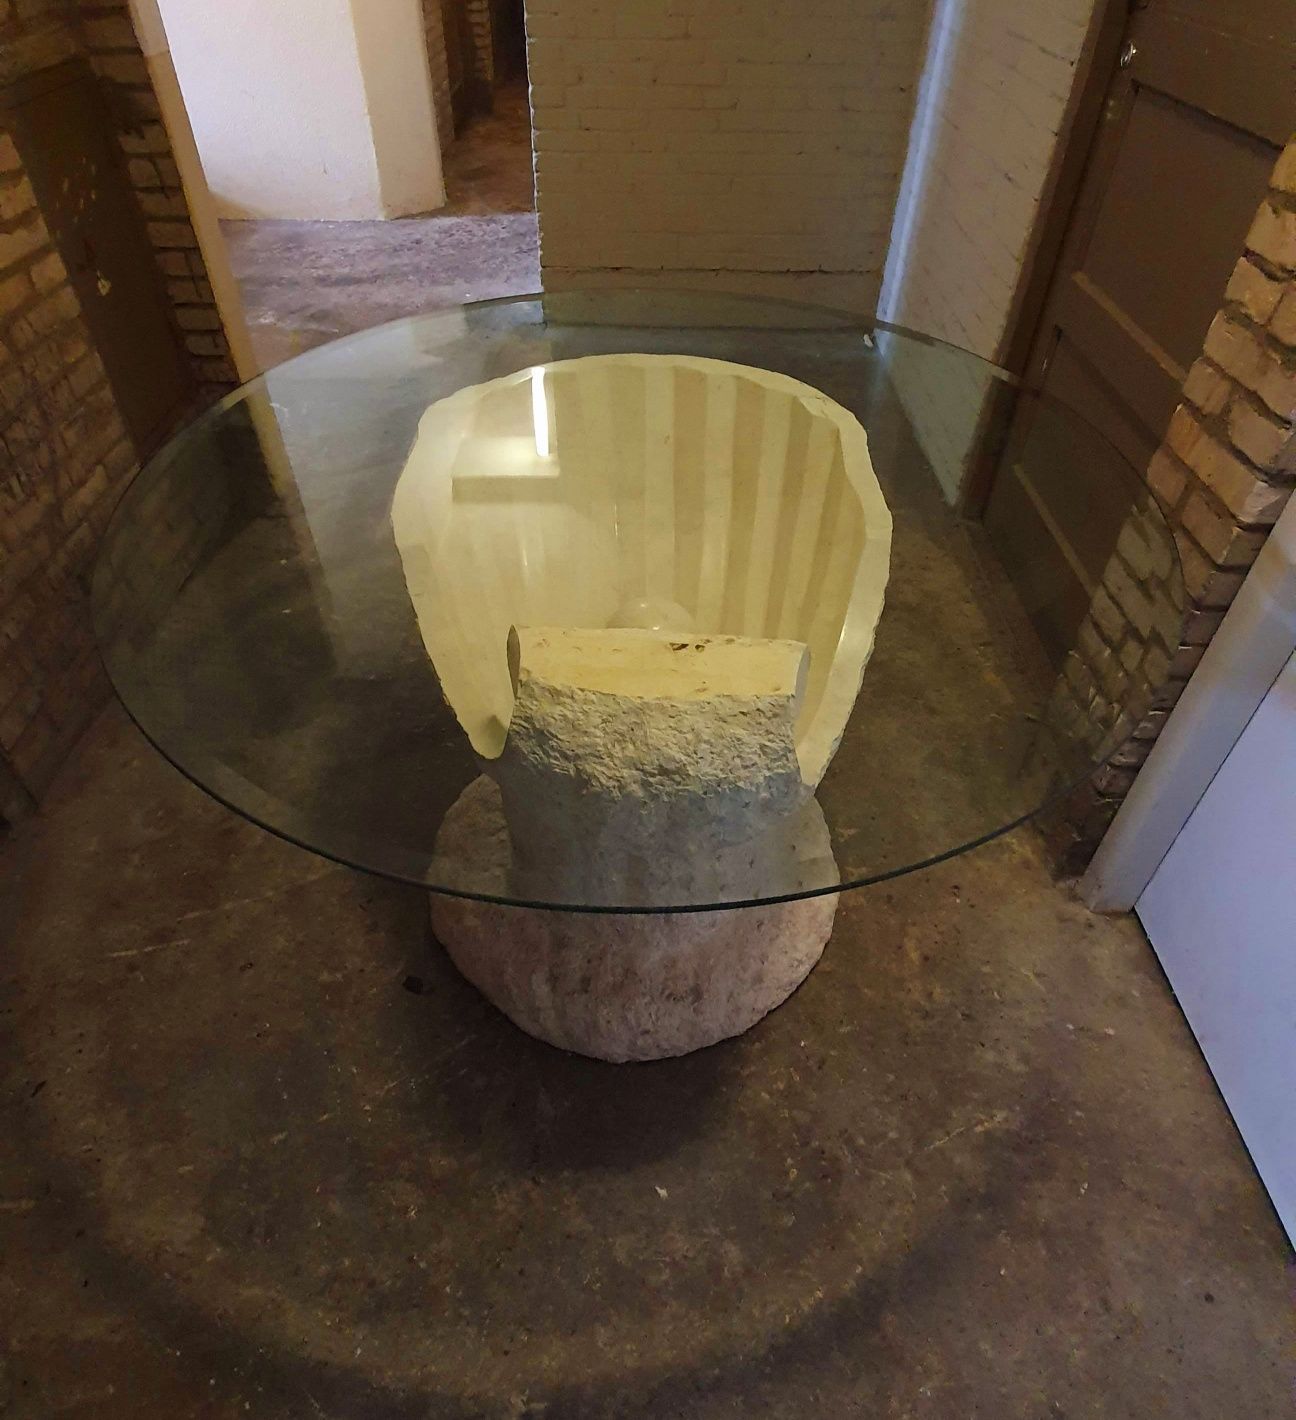 Unikatowy stół w kształcie muszli że szklanym blatem